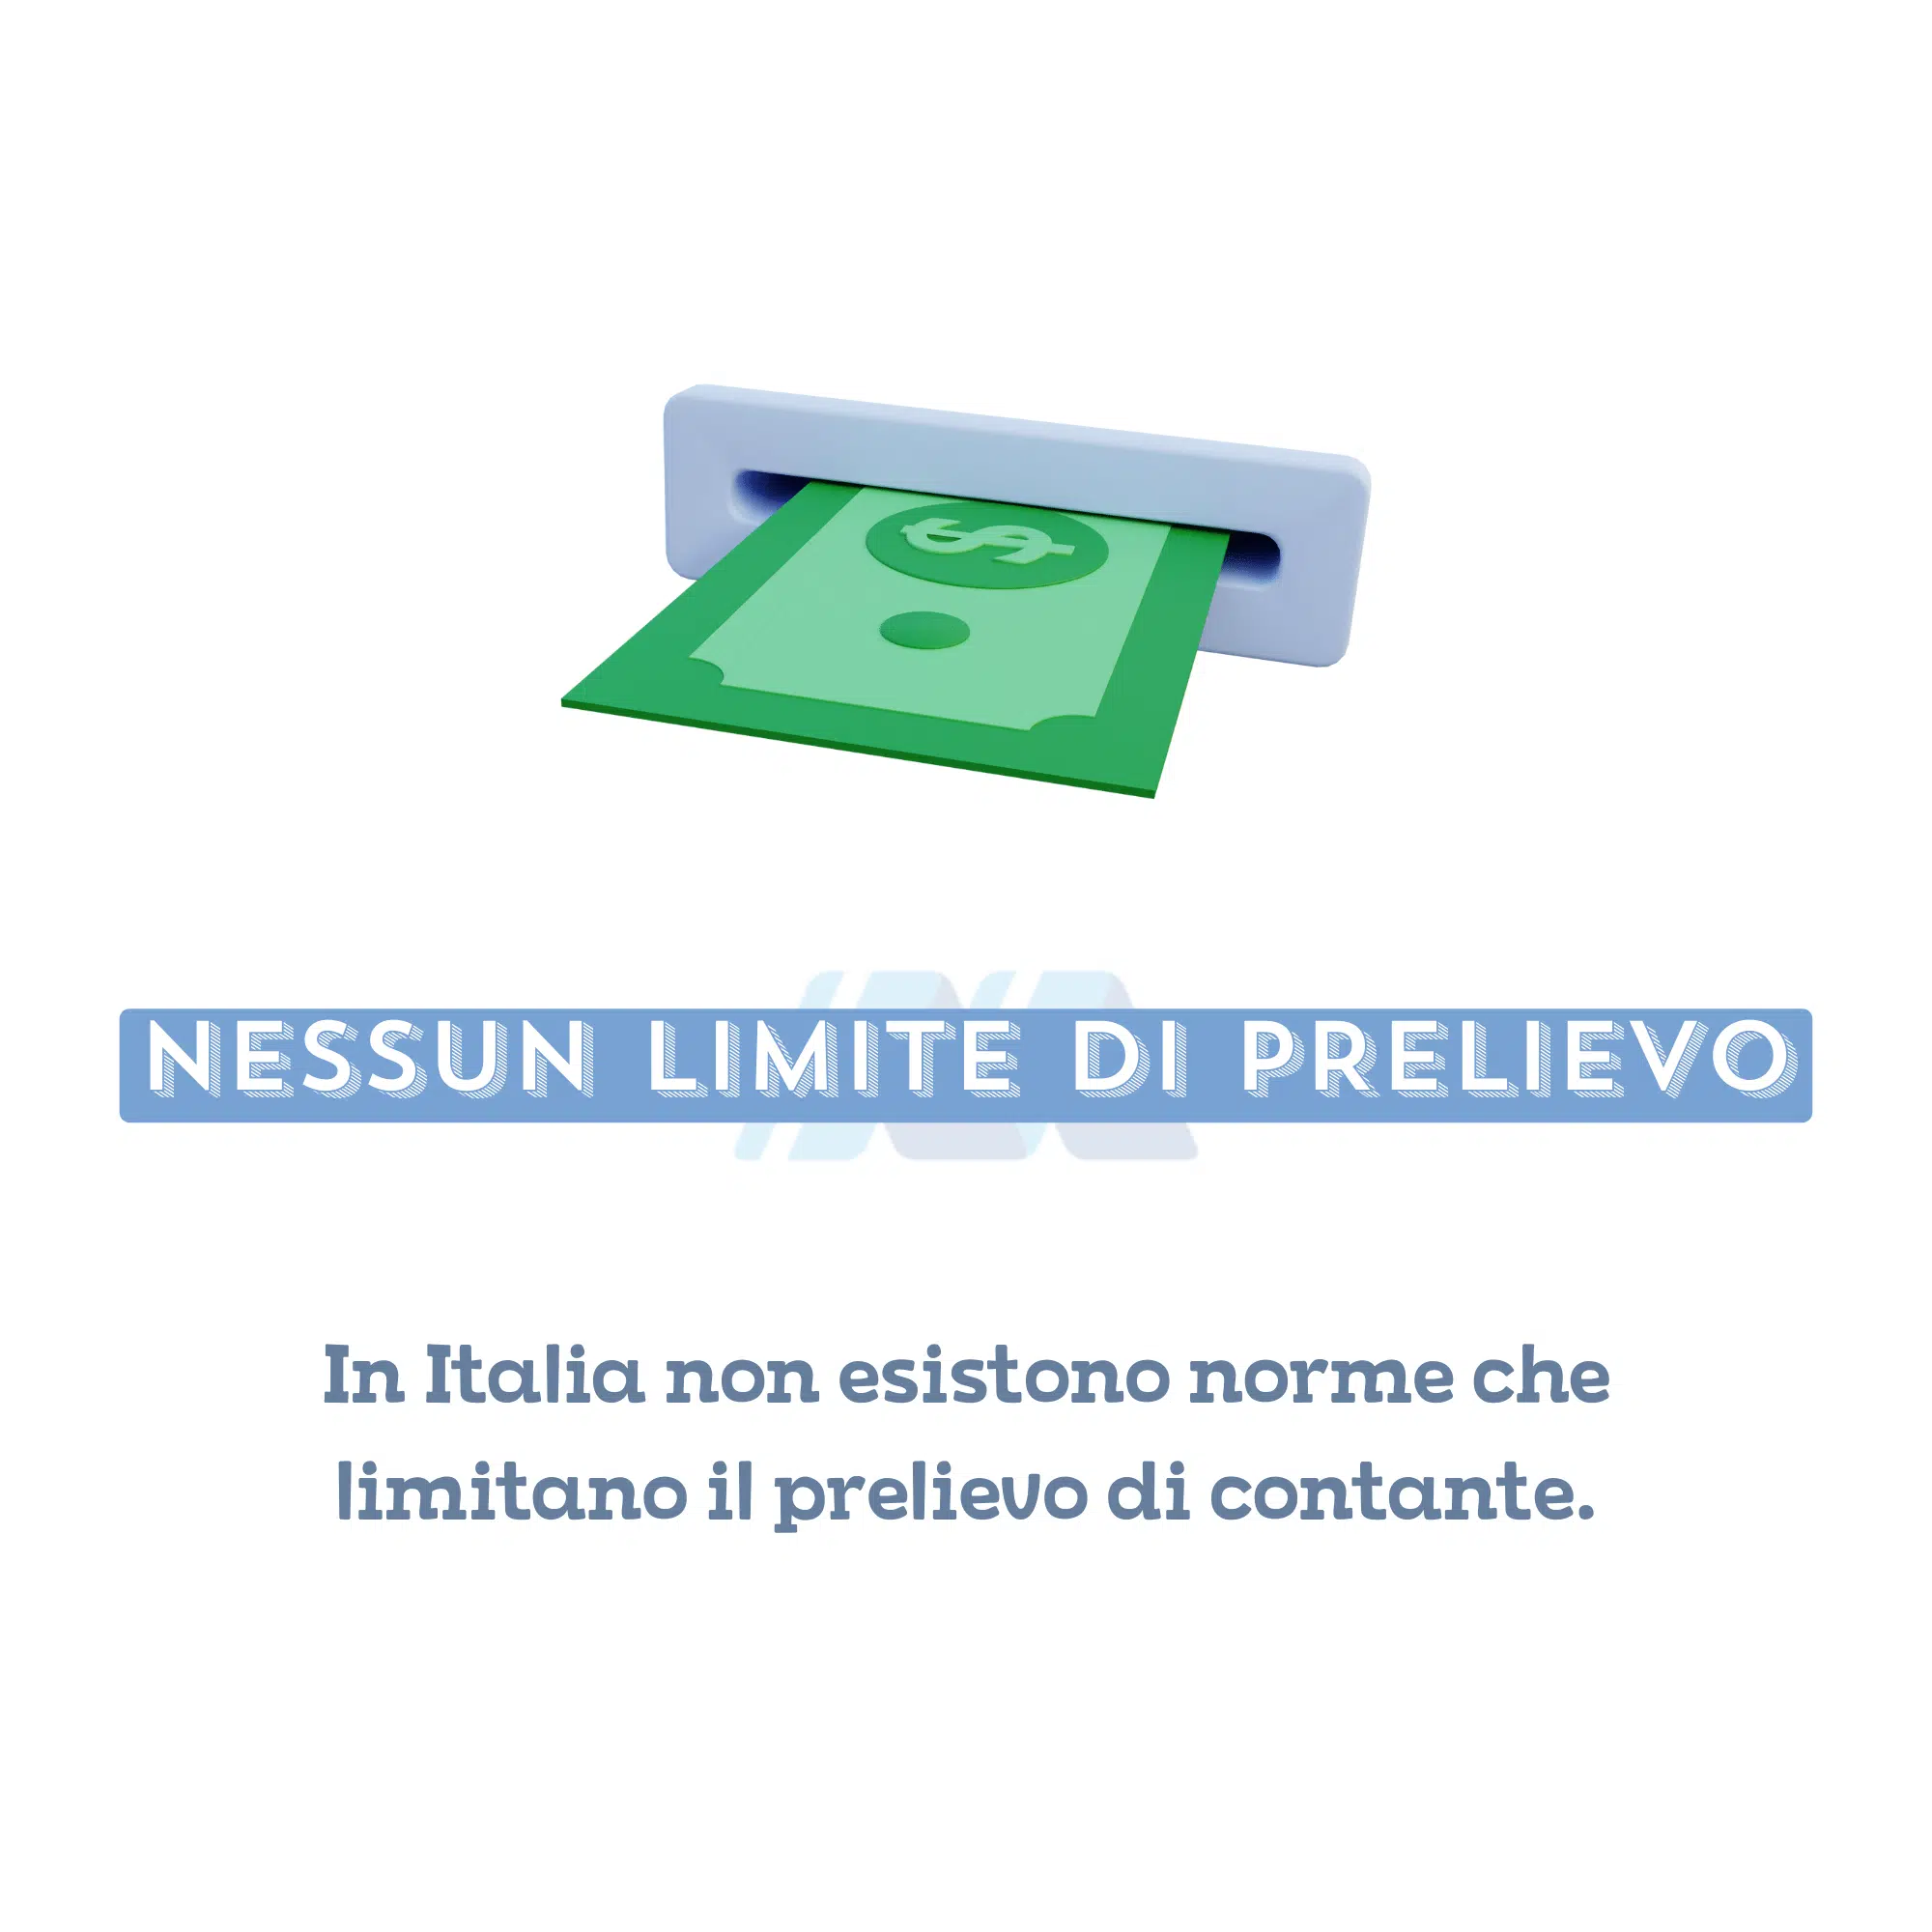 In Italia nessuna norma limita l'importo massimo prelevabile in contanti dal proprio conto corrente